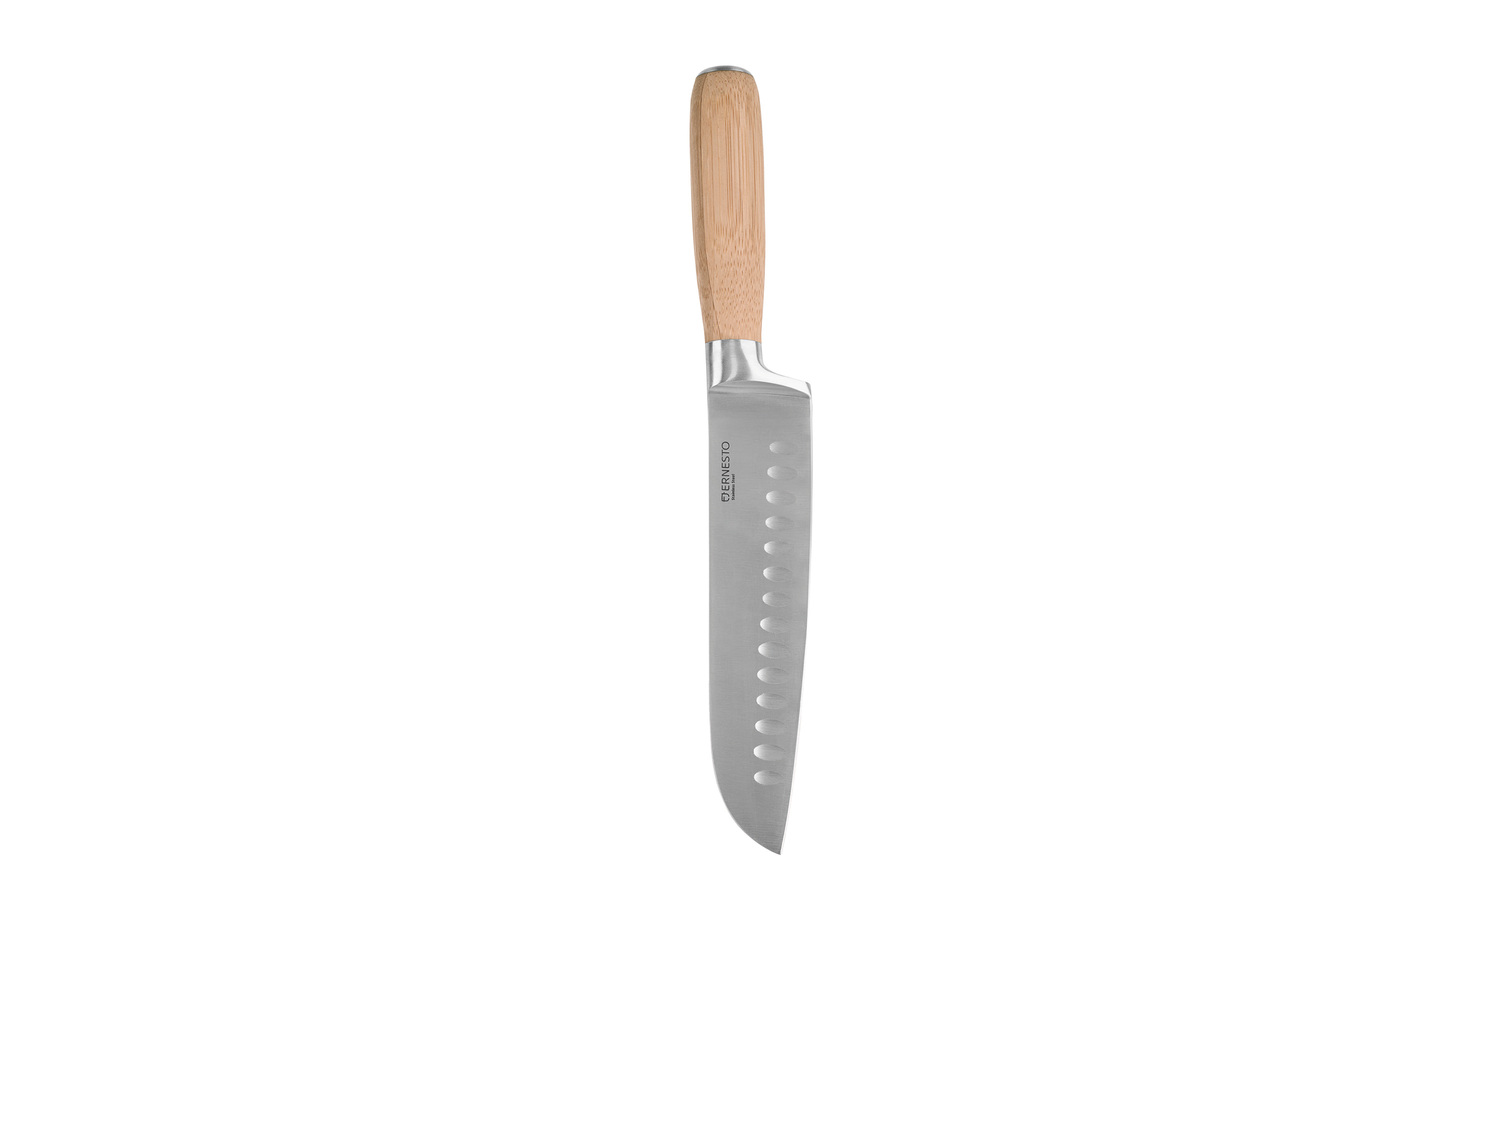 Couteau de cuisine , le prix 5.99 € 
Au choix :
- Couteau de chef : longueur ...